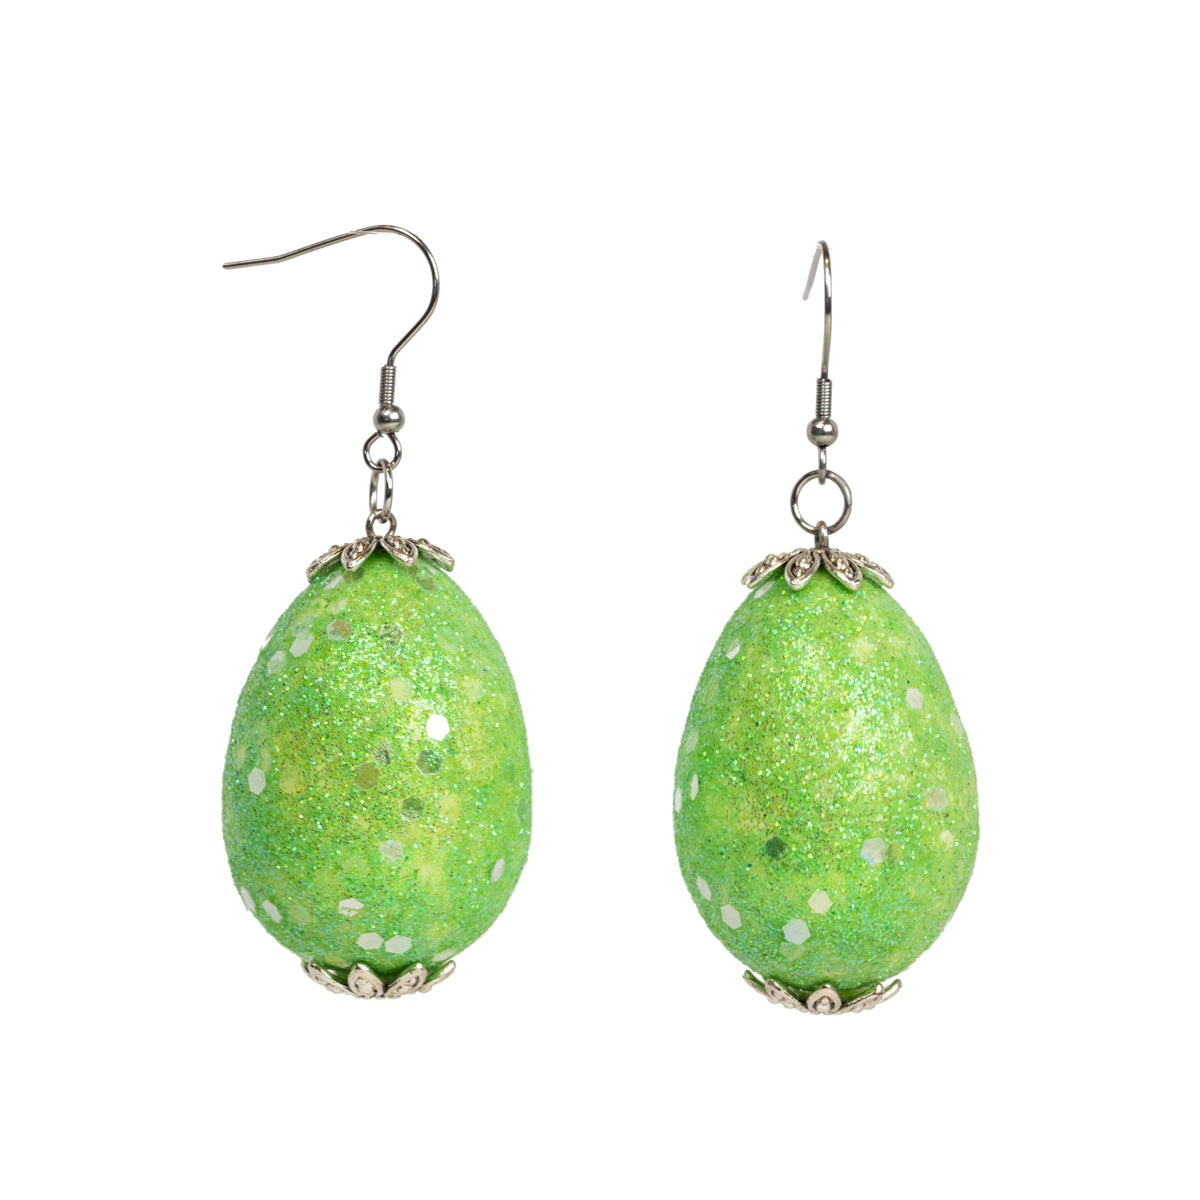 Glittering Easter egg earrings